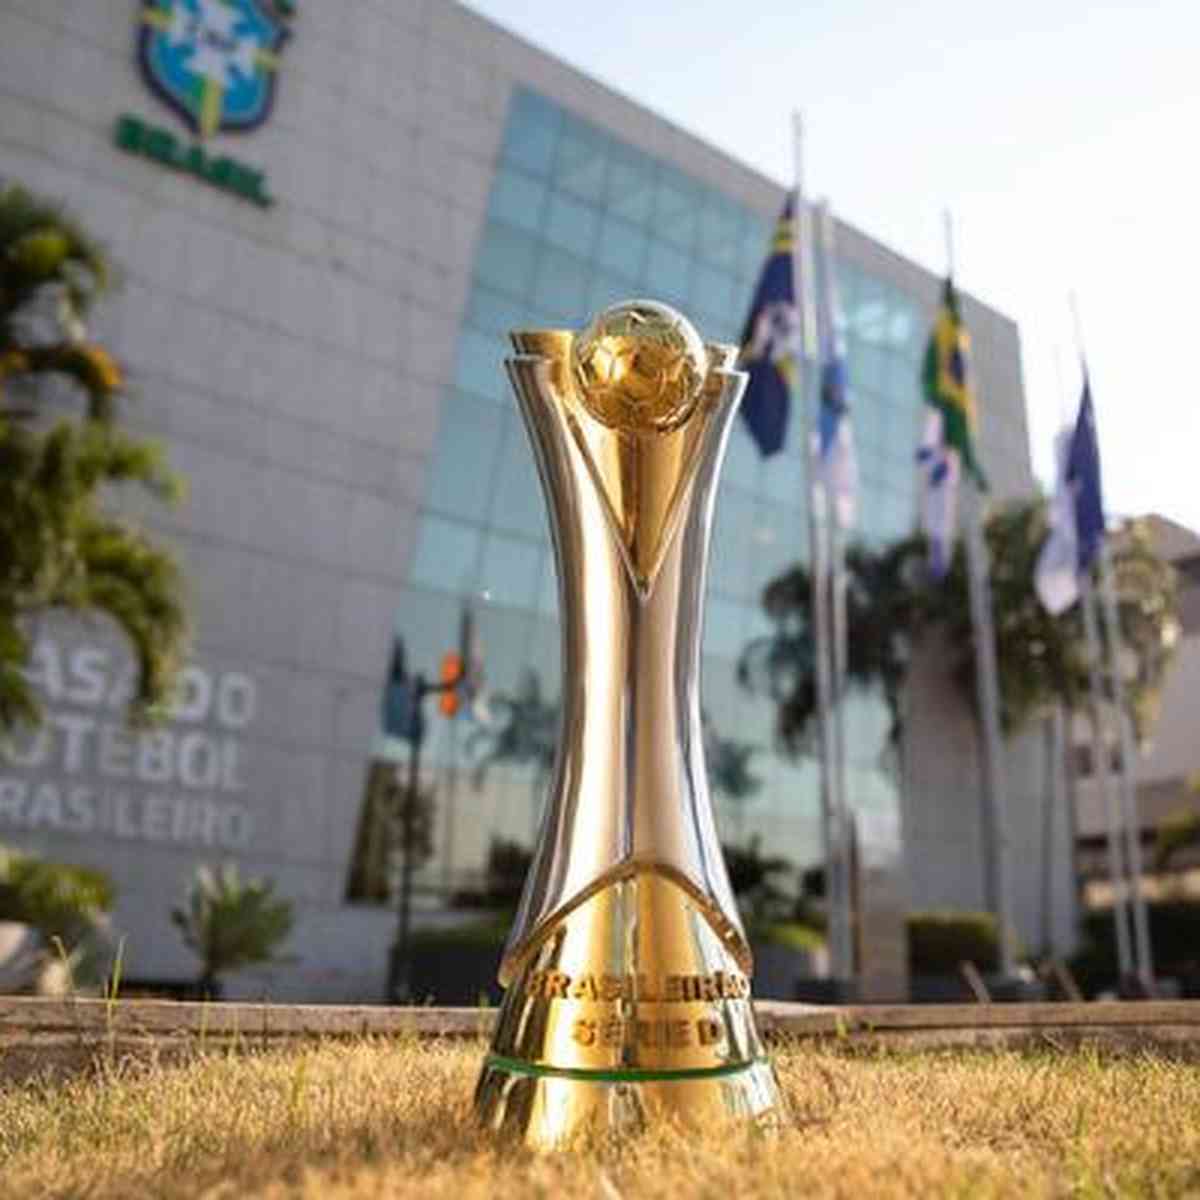 Veja a classificação da terceira rodada da Série D do Brasileirão 2022